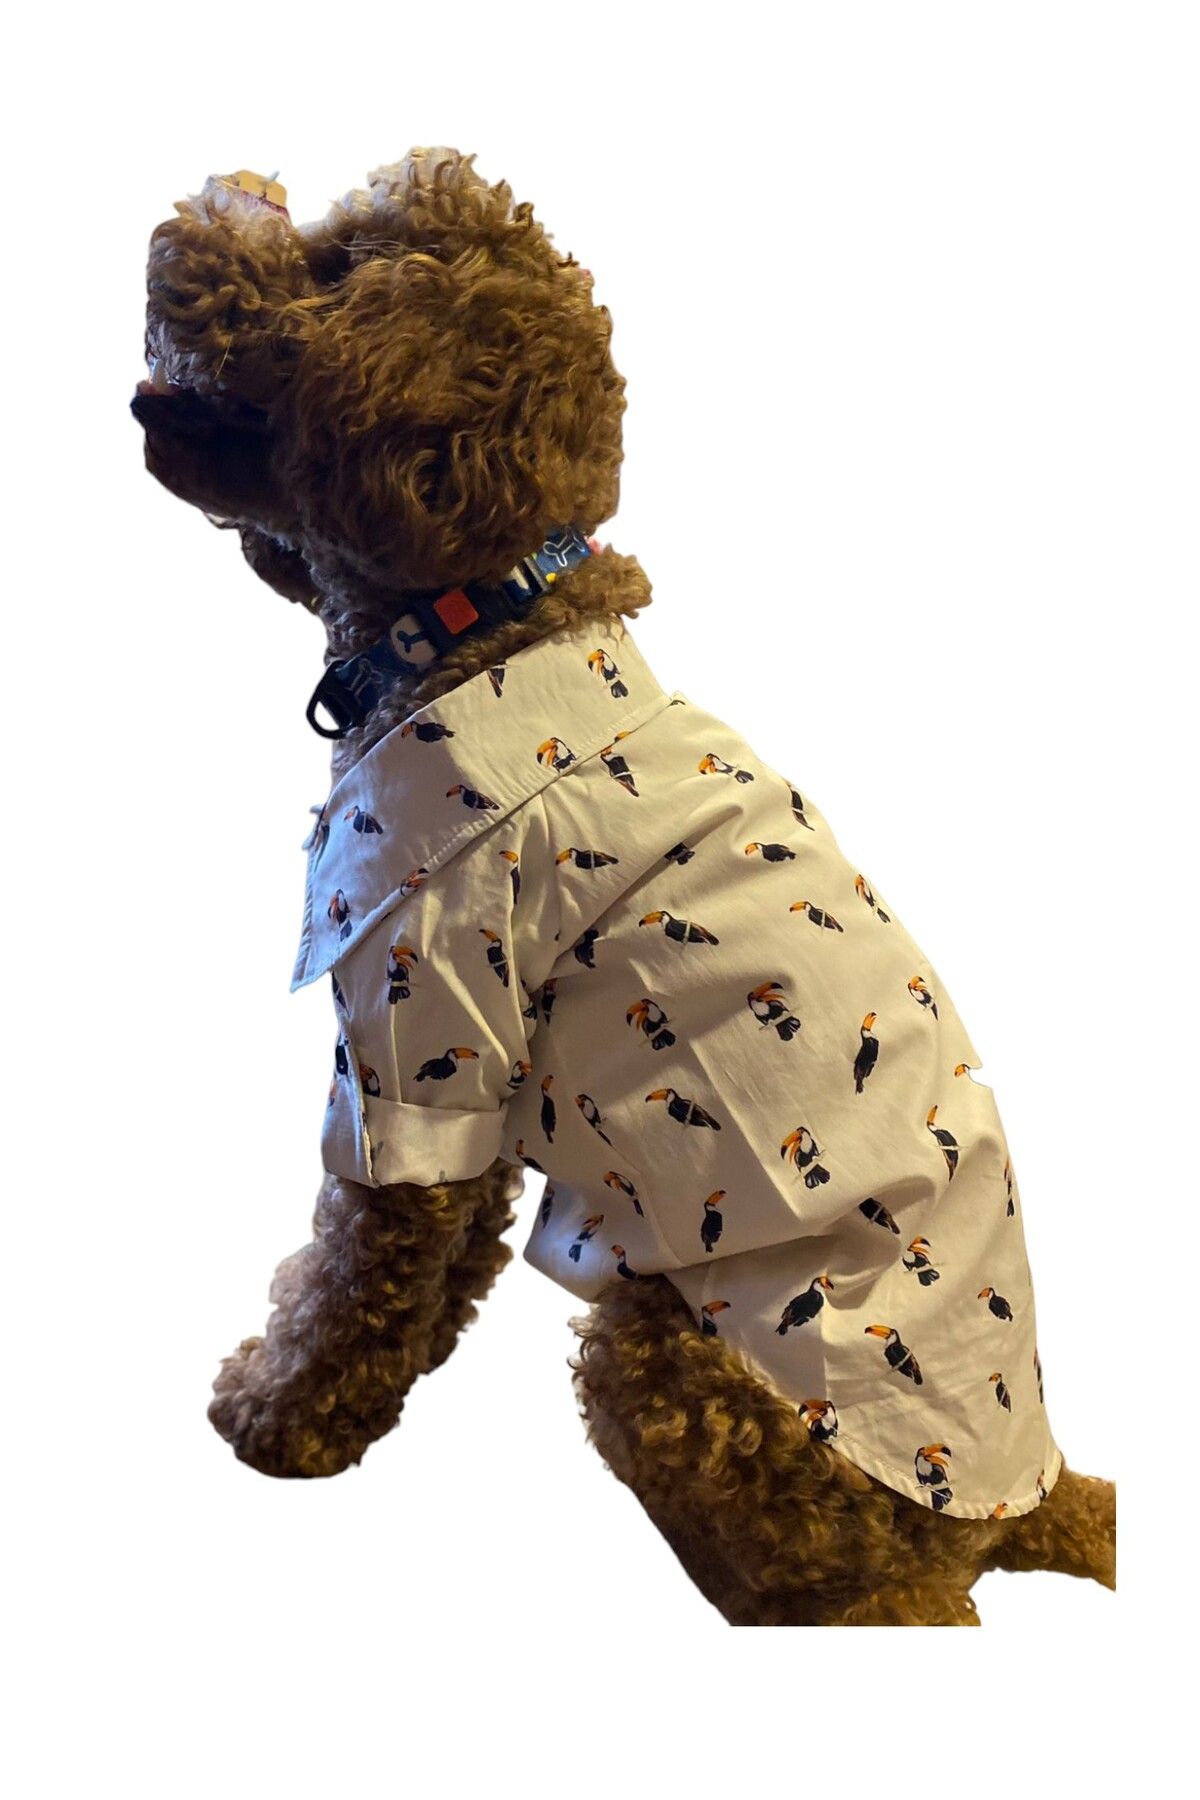 MİNİŞ PET BUTİK Tucan Küçük Irk Köpek Gömleği (2,5 kg - 13 kg arasına uygun bedenlerde)